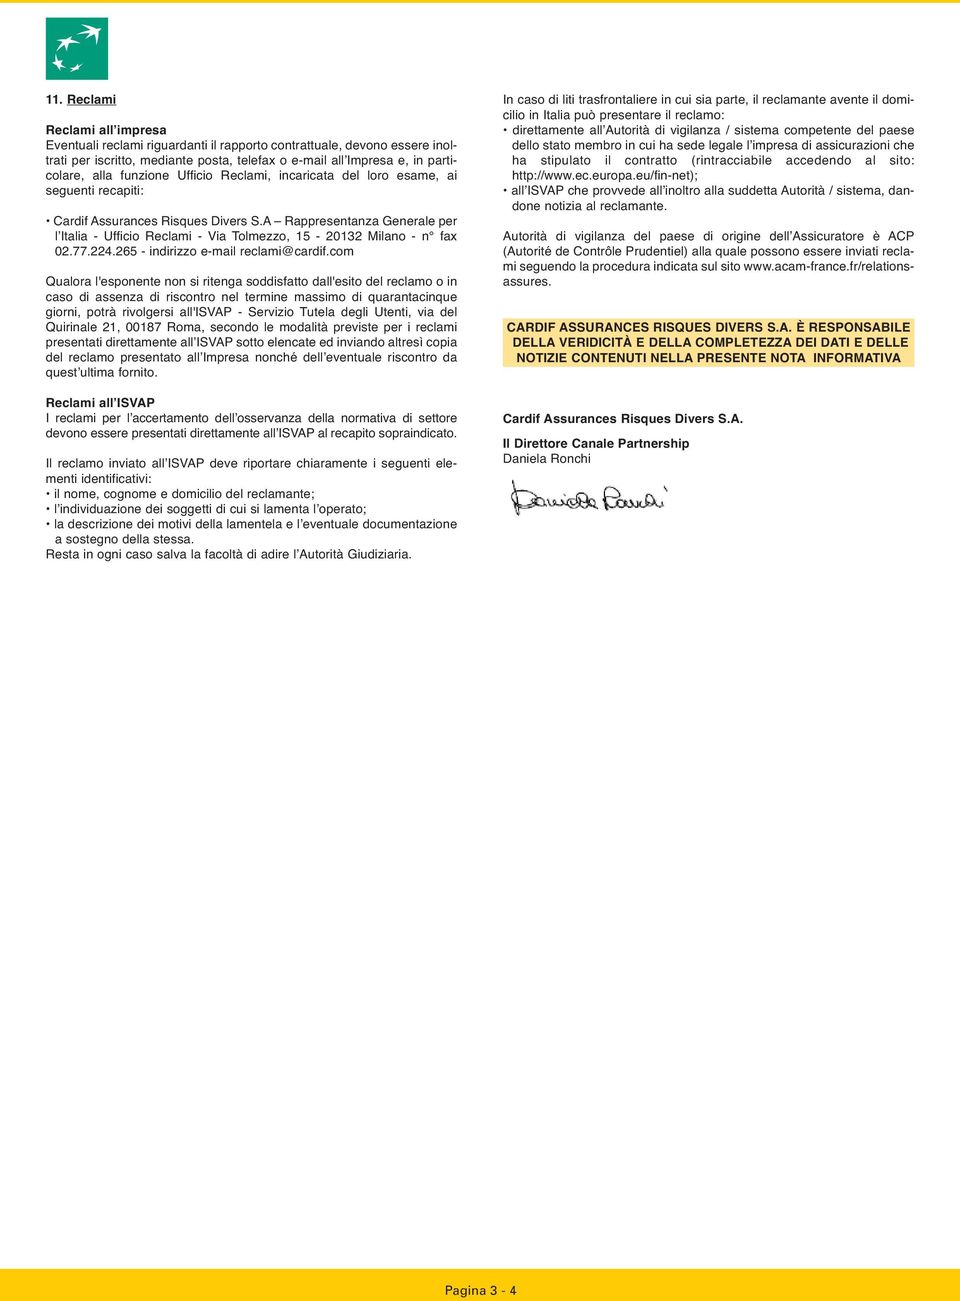 A Rappresentanza Generale per l Italia - Ufficio Reclami - Via Tolmezzo, 15-20132 Milano - n fax 02.77.224.265 - indirizzo e-mail reclami@cardif.